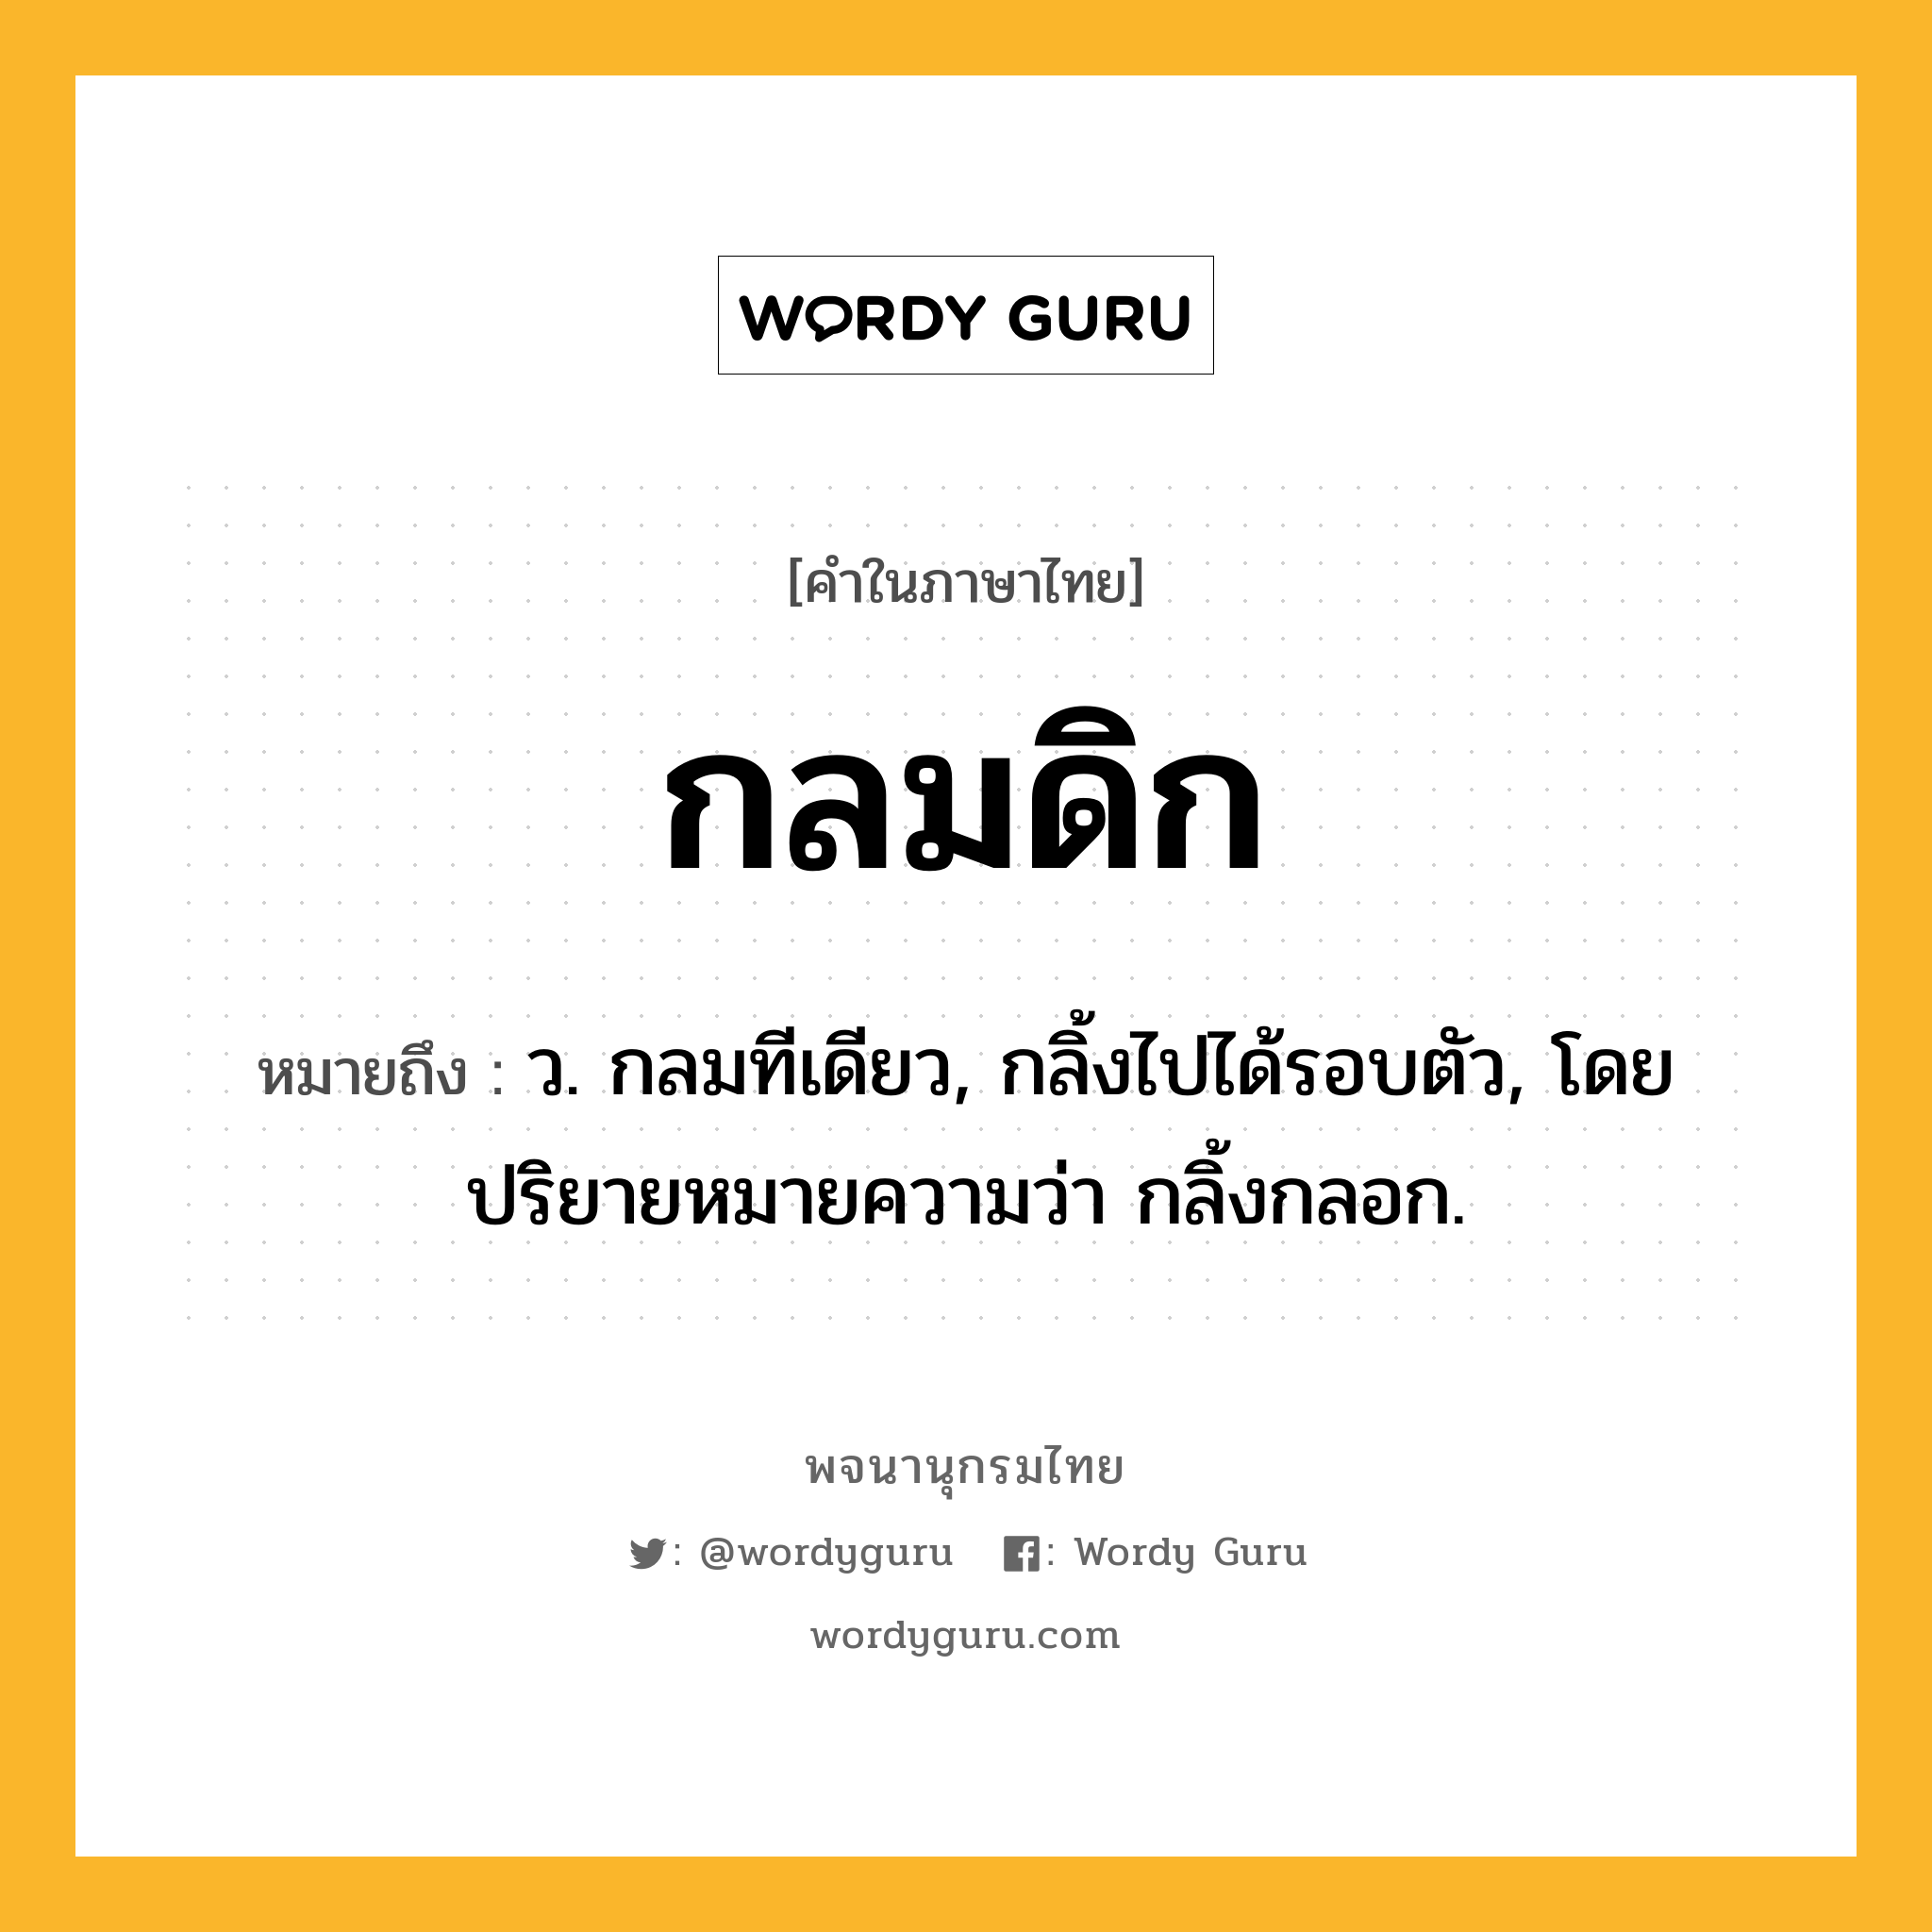 กลมดิก หมายถึงอะไร?, คำในภาษาไทย กลมดิก หมายถึง ว. กลมทีเดียว, กลิ้งไปได้รอบตัว, โดยปริยายหมายความว่า กลิ้งกลอก.